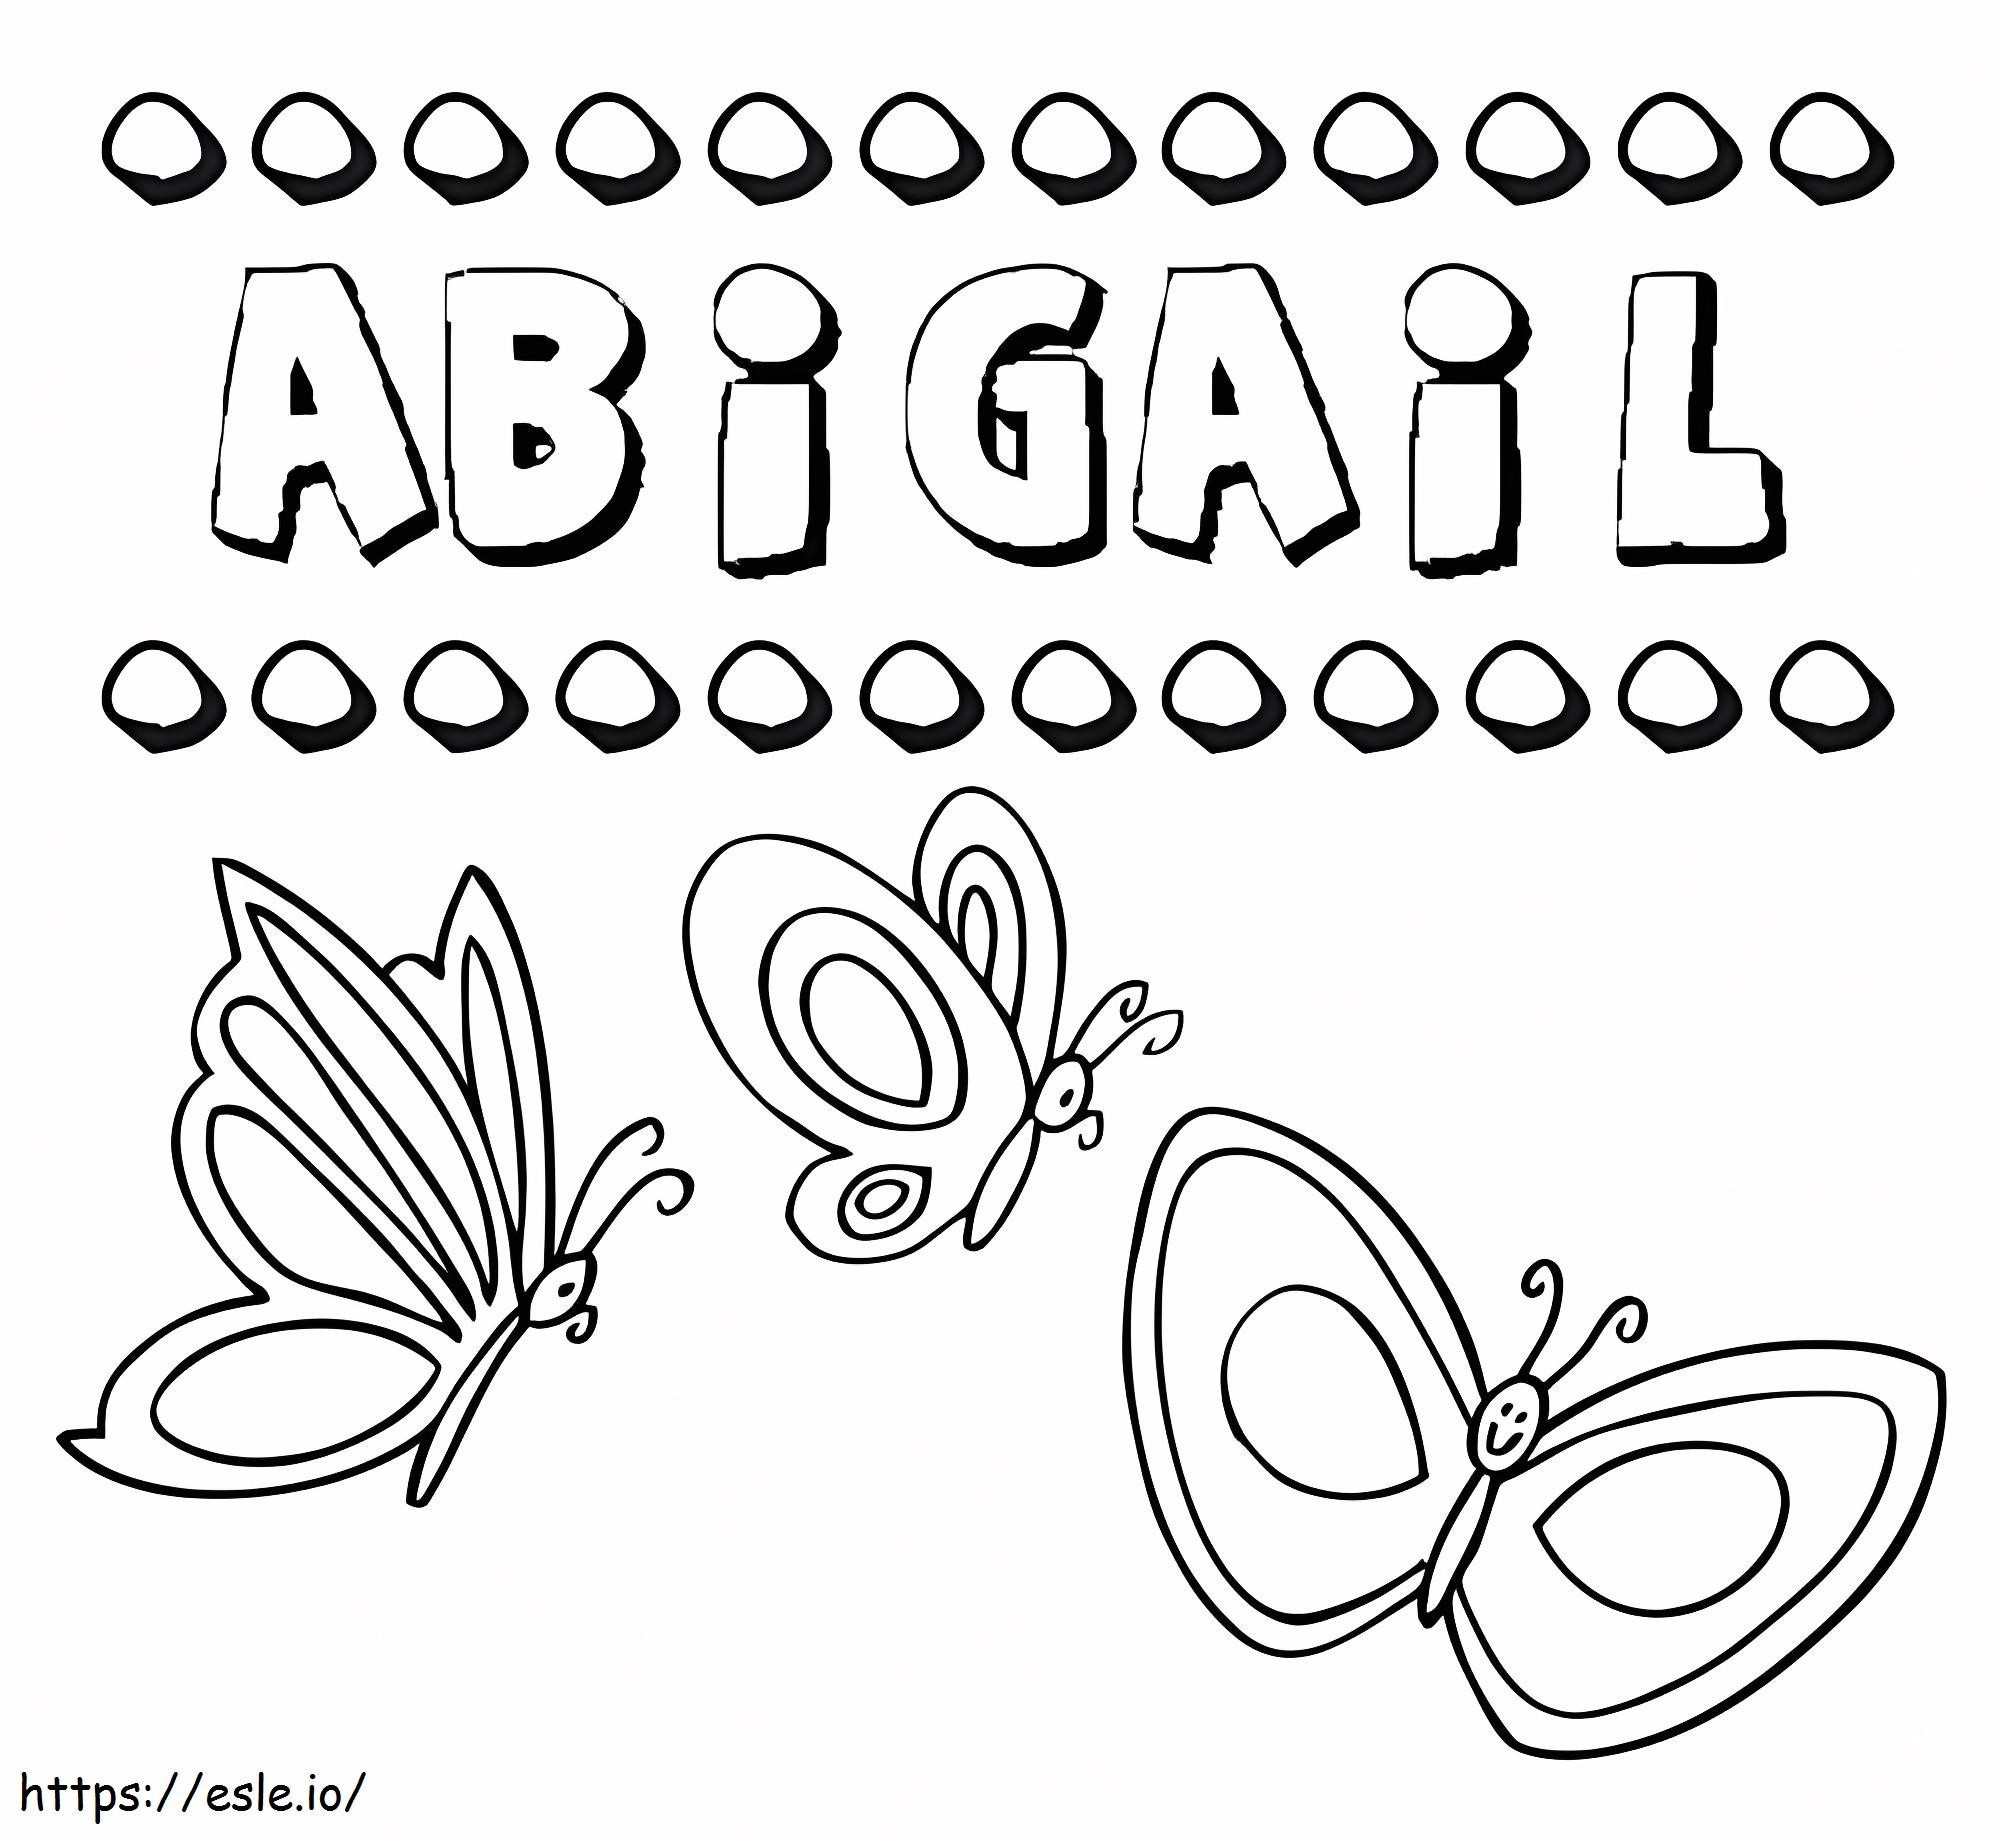 Abigail Ücretsiz Yazdırılabilir boyama